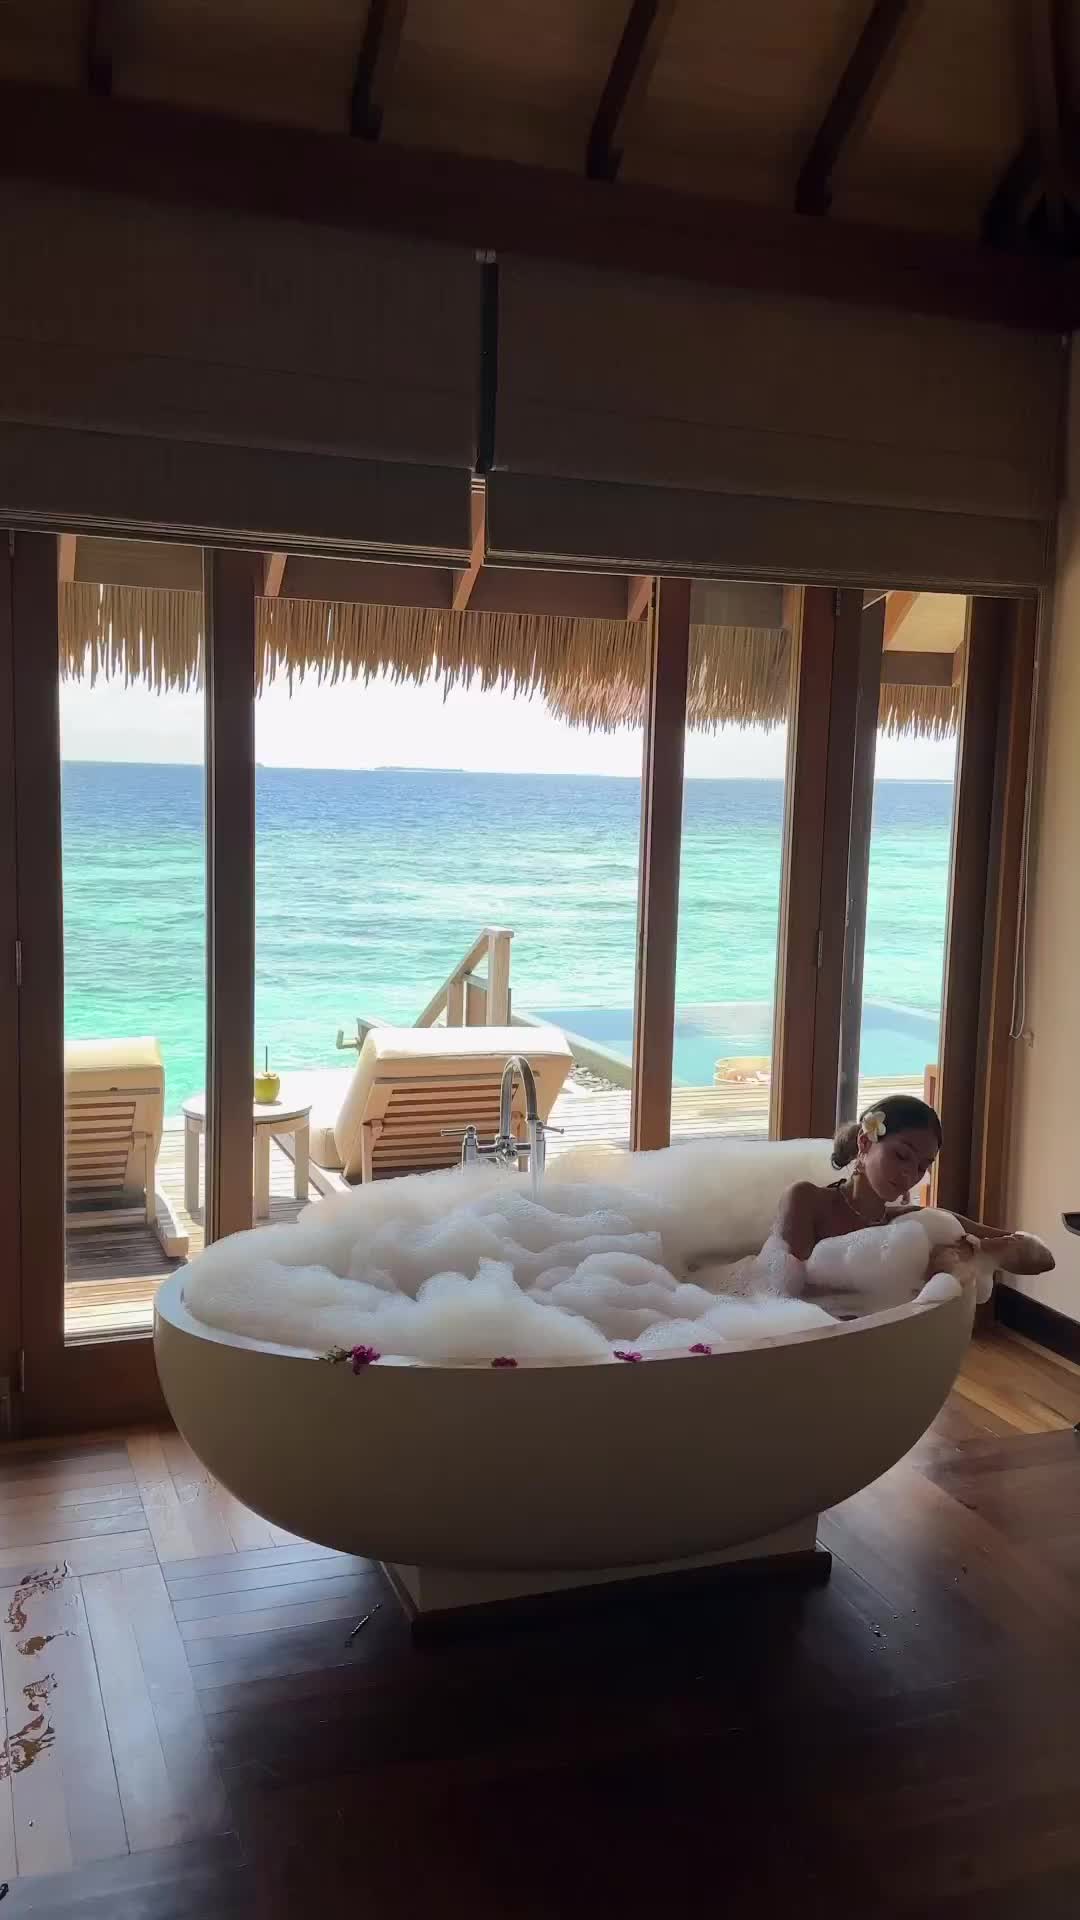 Luxurious Bubble Bath at Ayada Maldives Resort